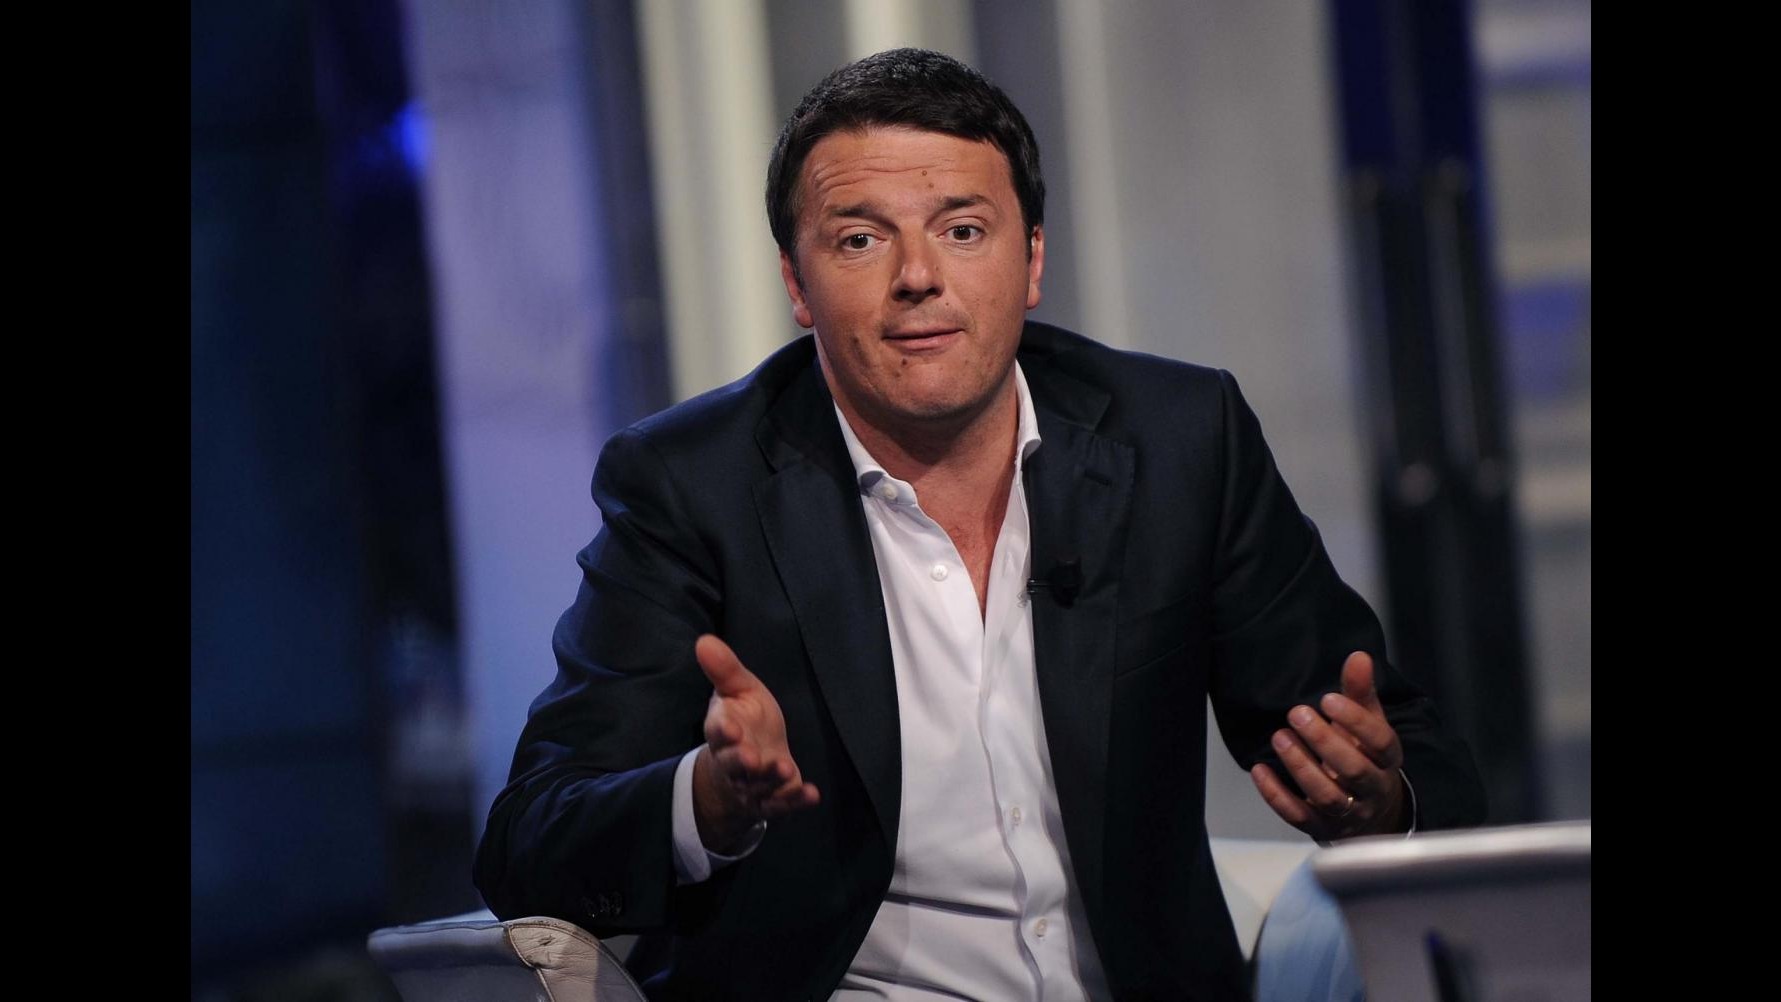 Renzi: Grillo e Berlusconi bravi leader ma hanno fallito. Stop a rabbia usata per creare polemiche